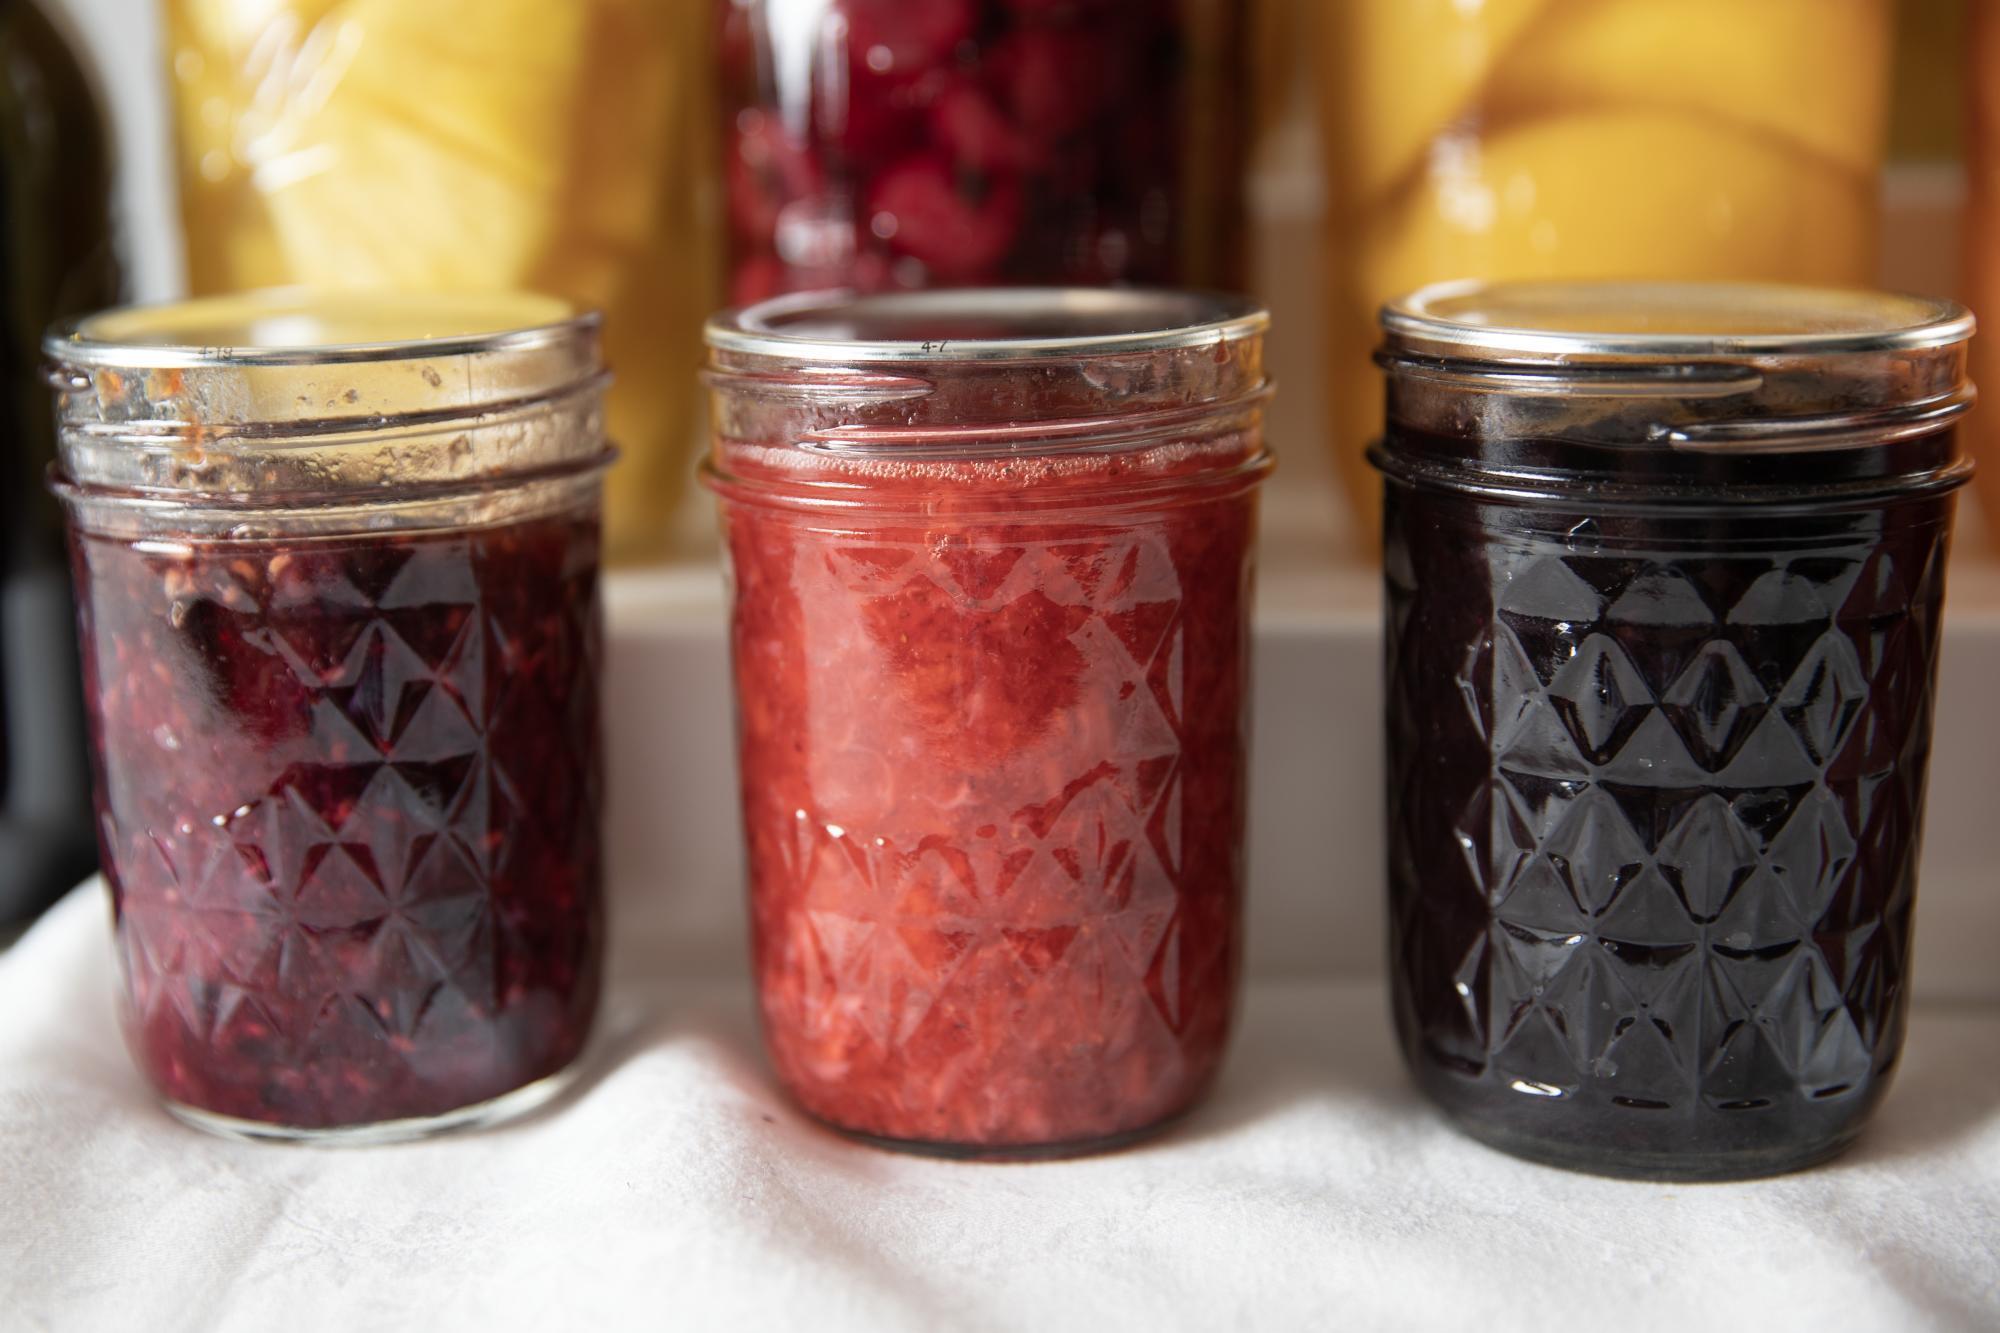 Jam in many jars